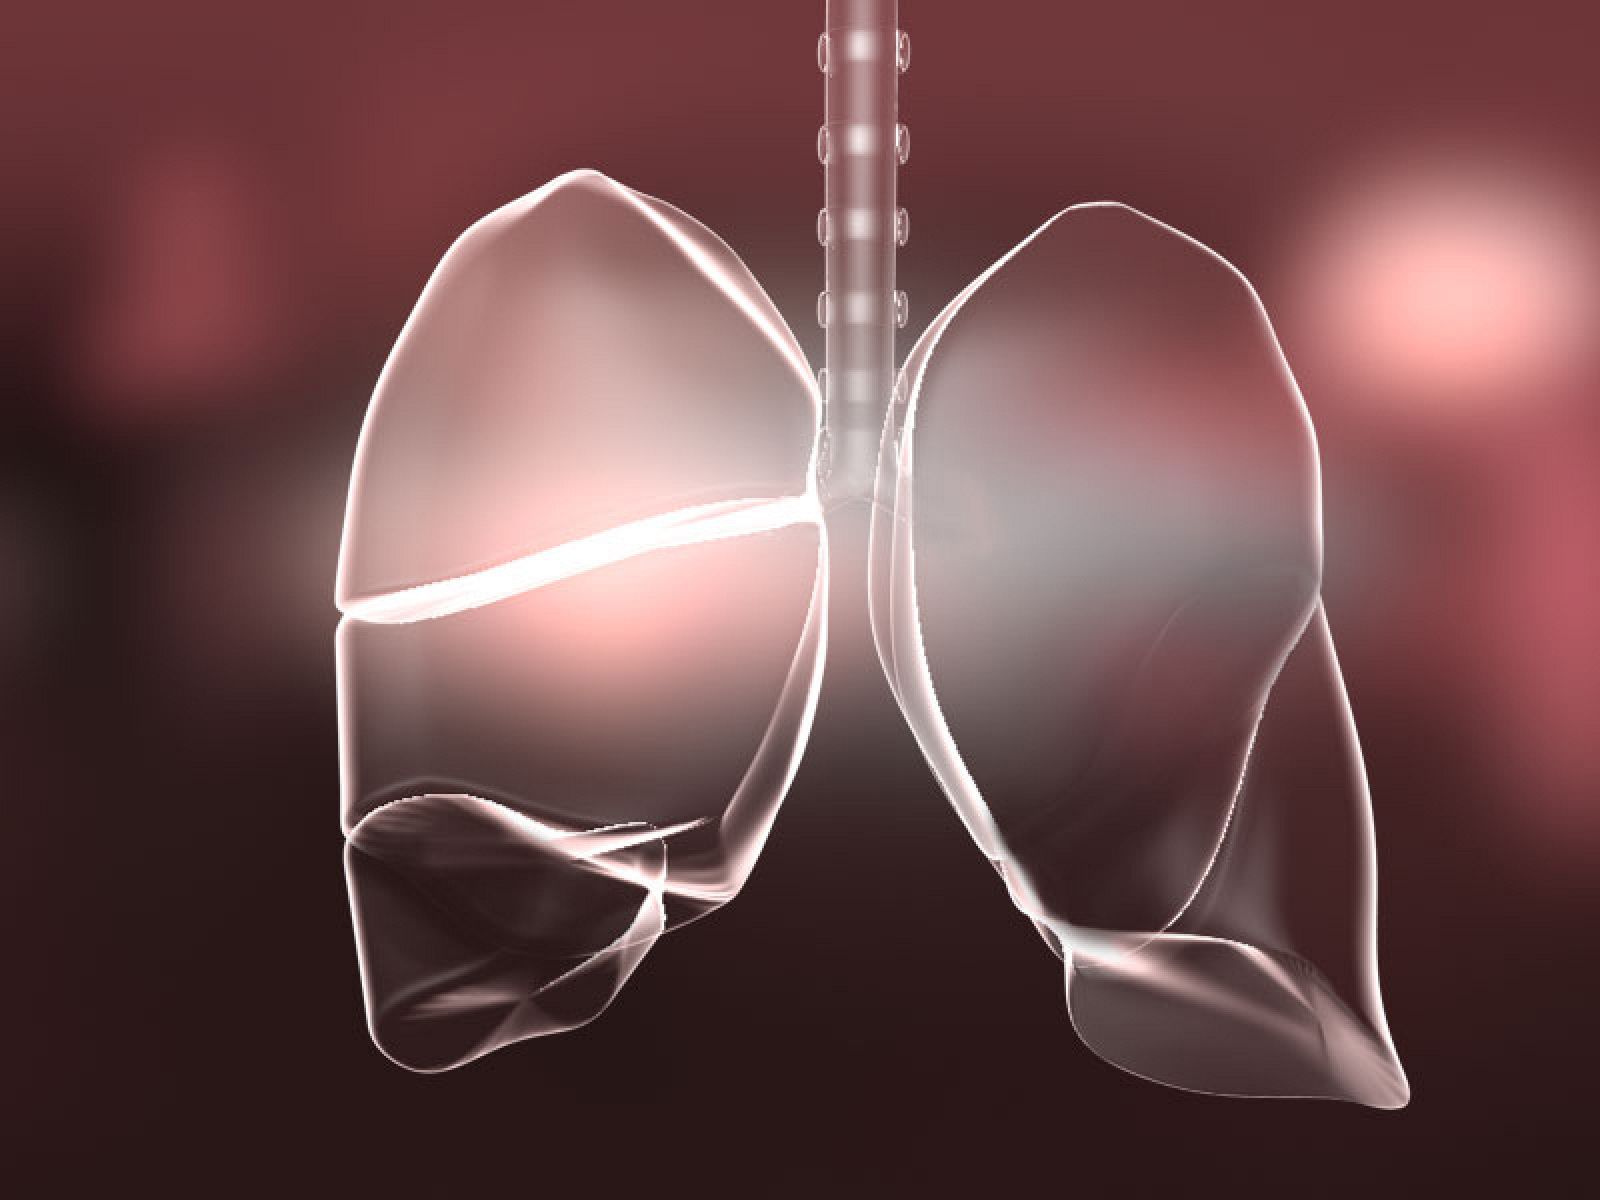 Ilustración de los pulmones.